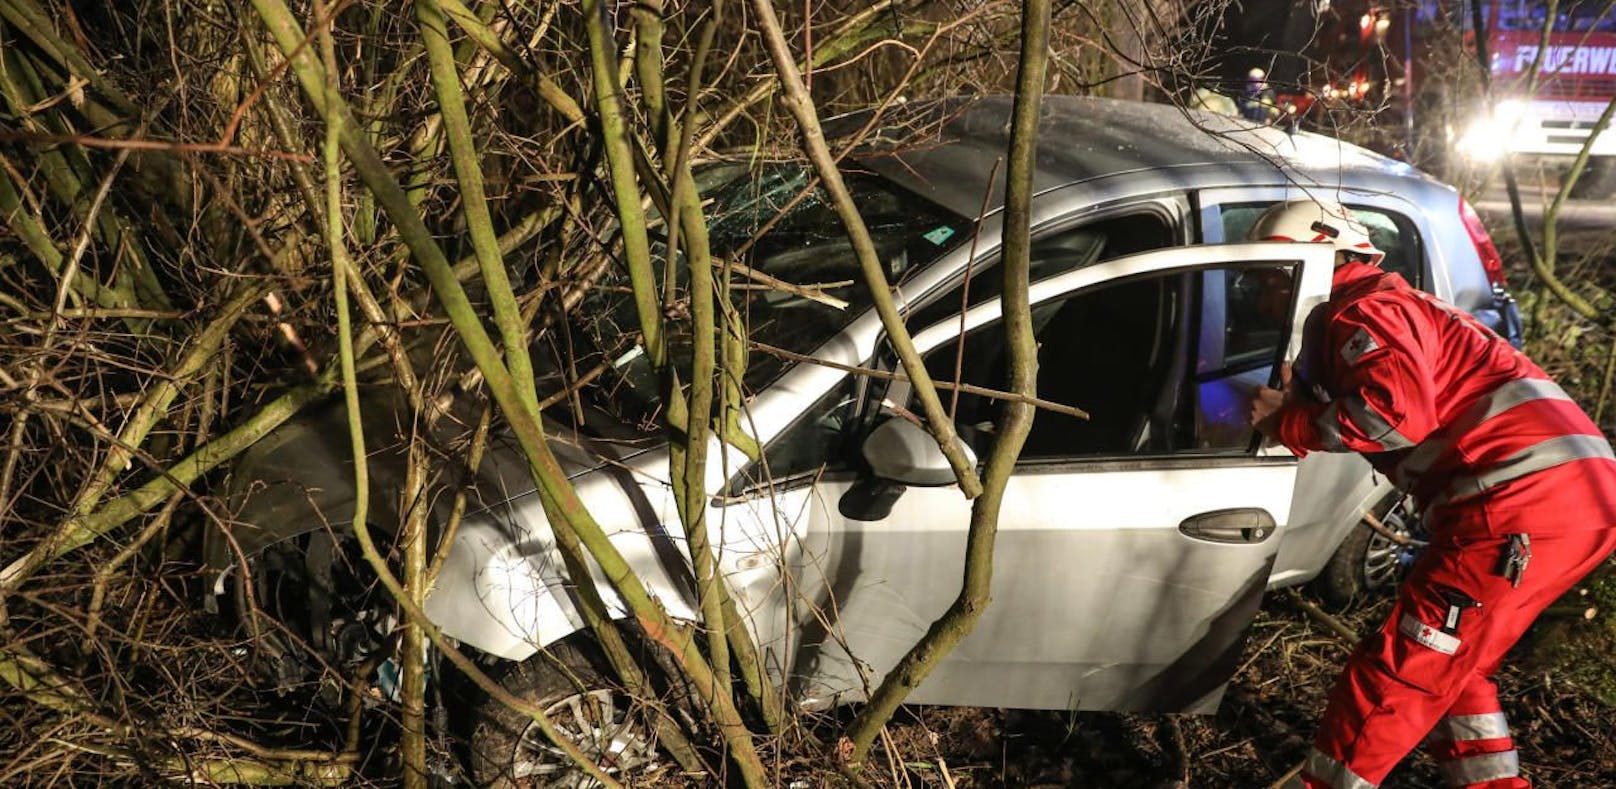 Auto blieb nach Unfall zwischen Bäumen stecken